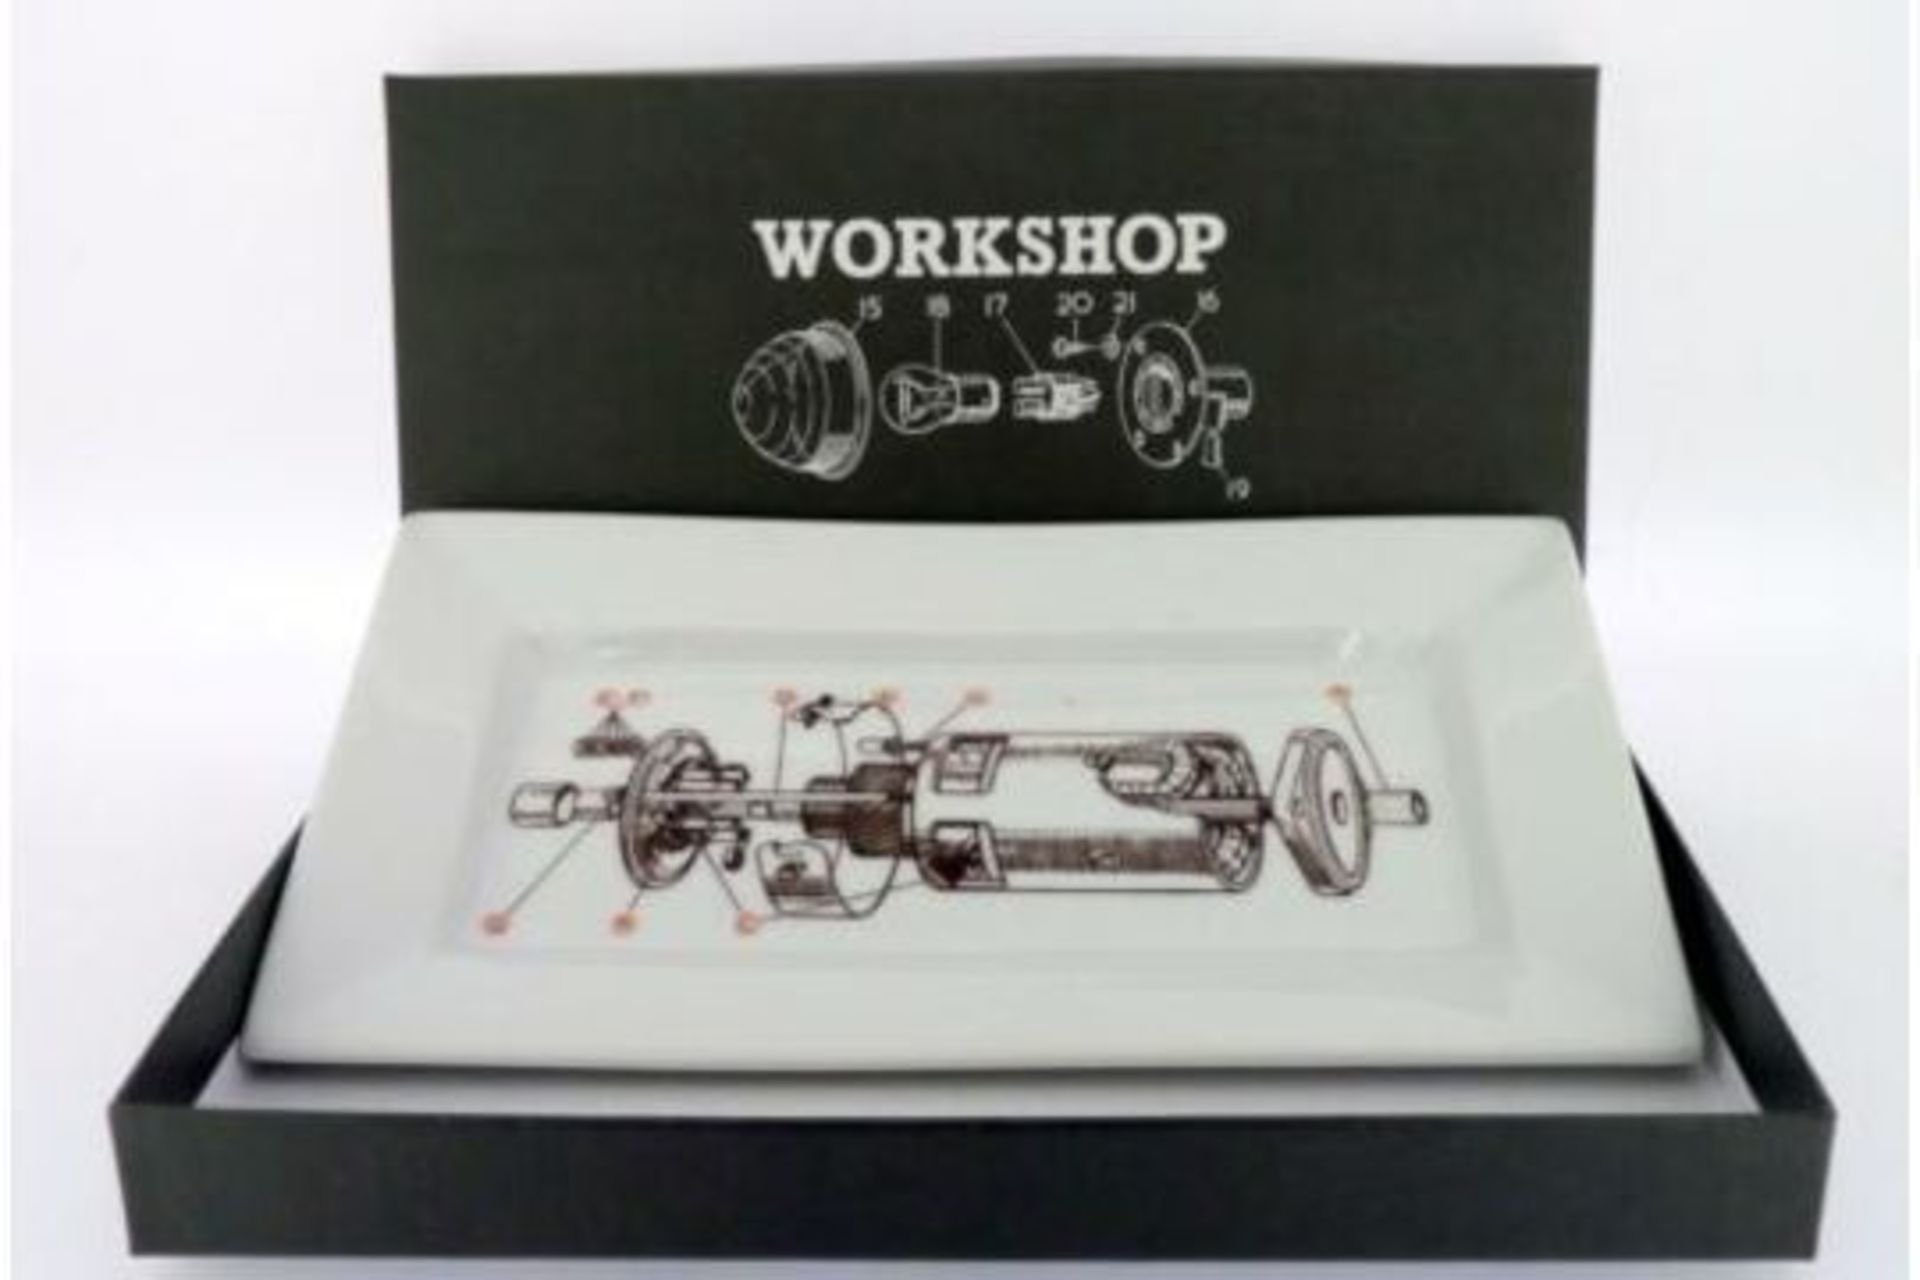 Workshop Useful Porcelain Tray - RRP £10.99.